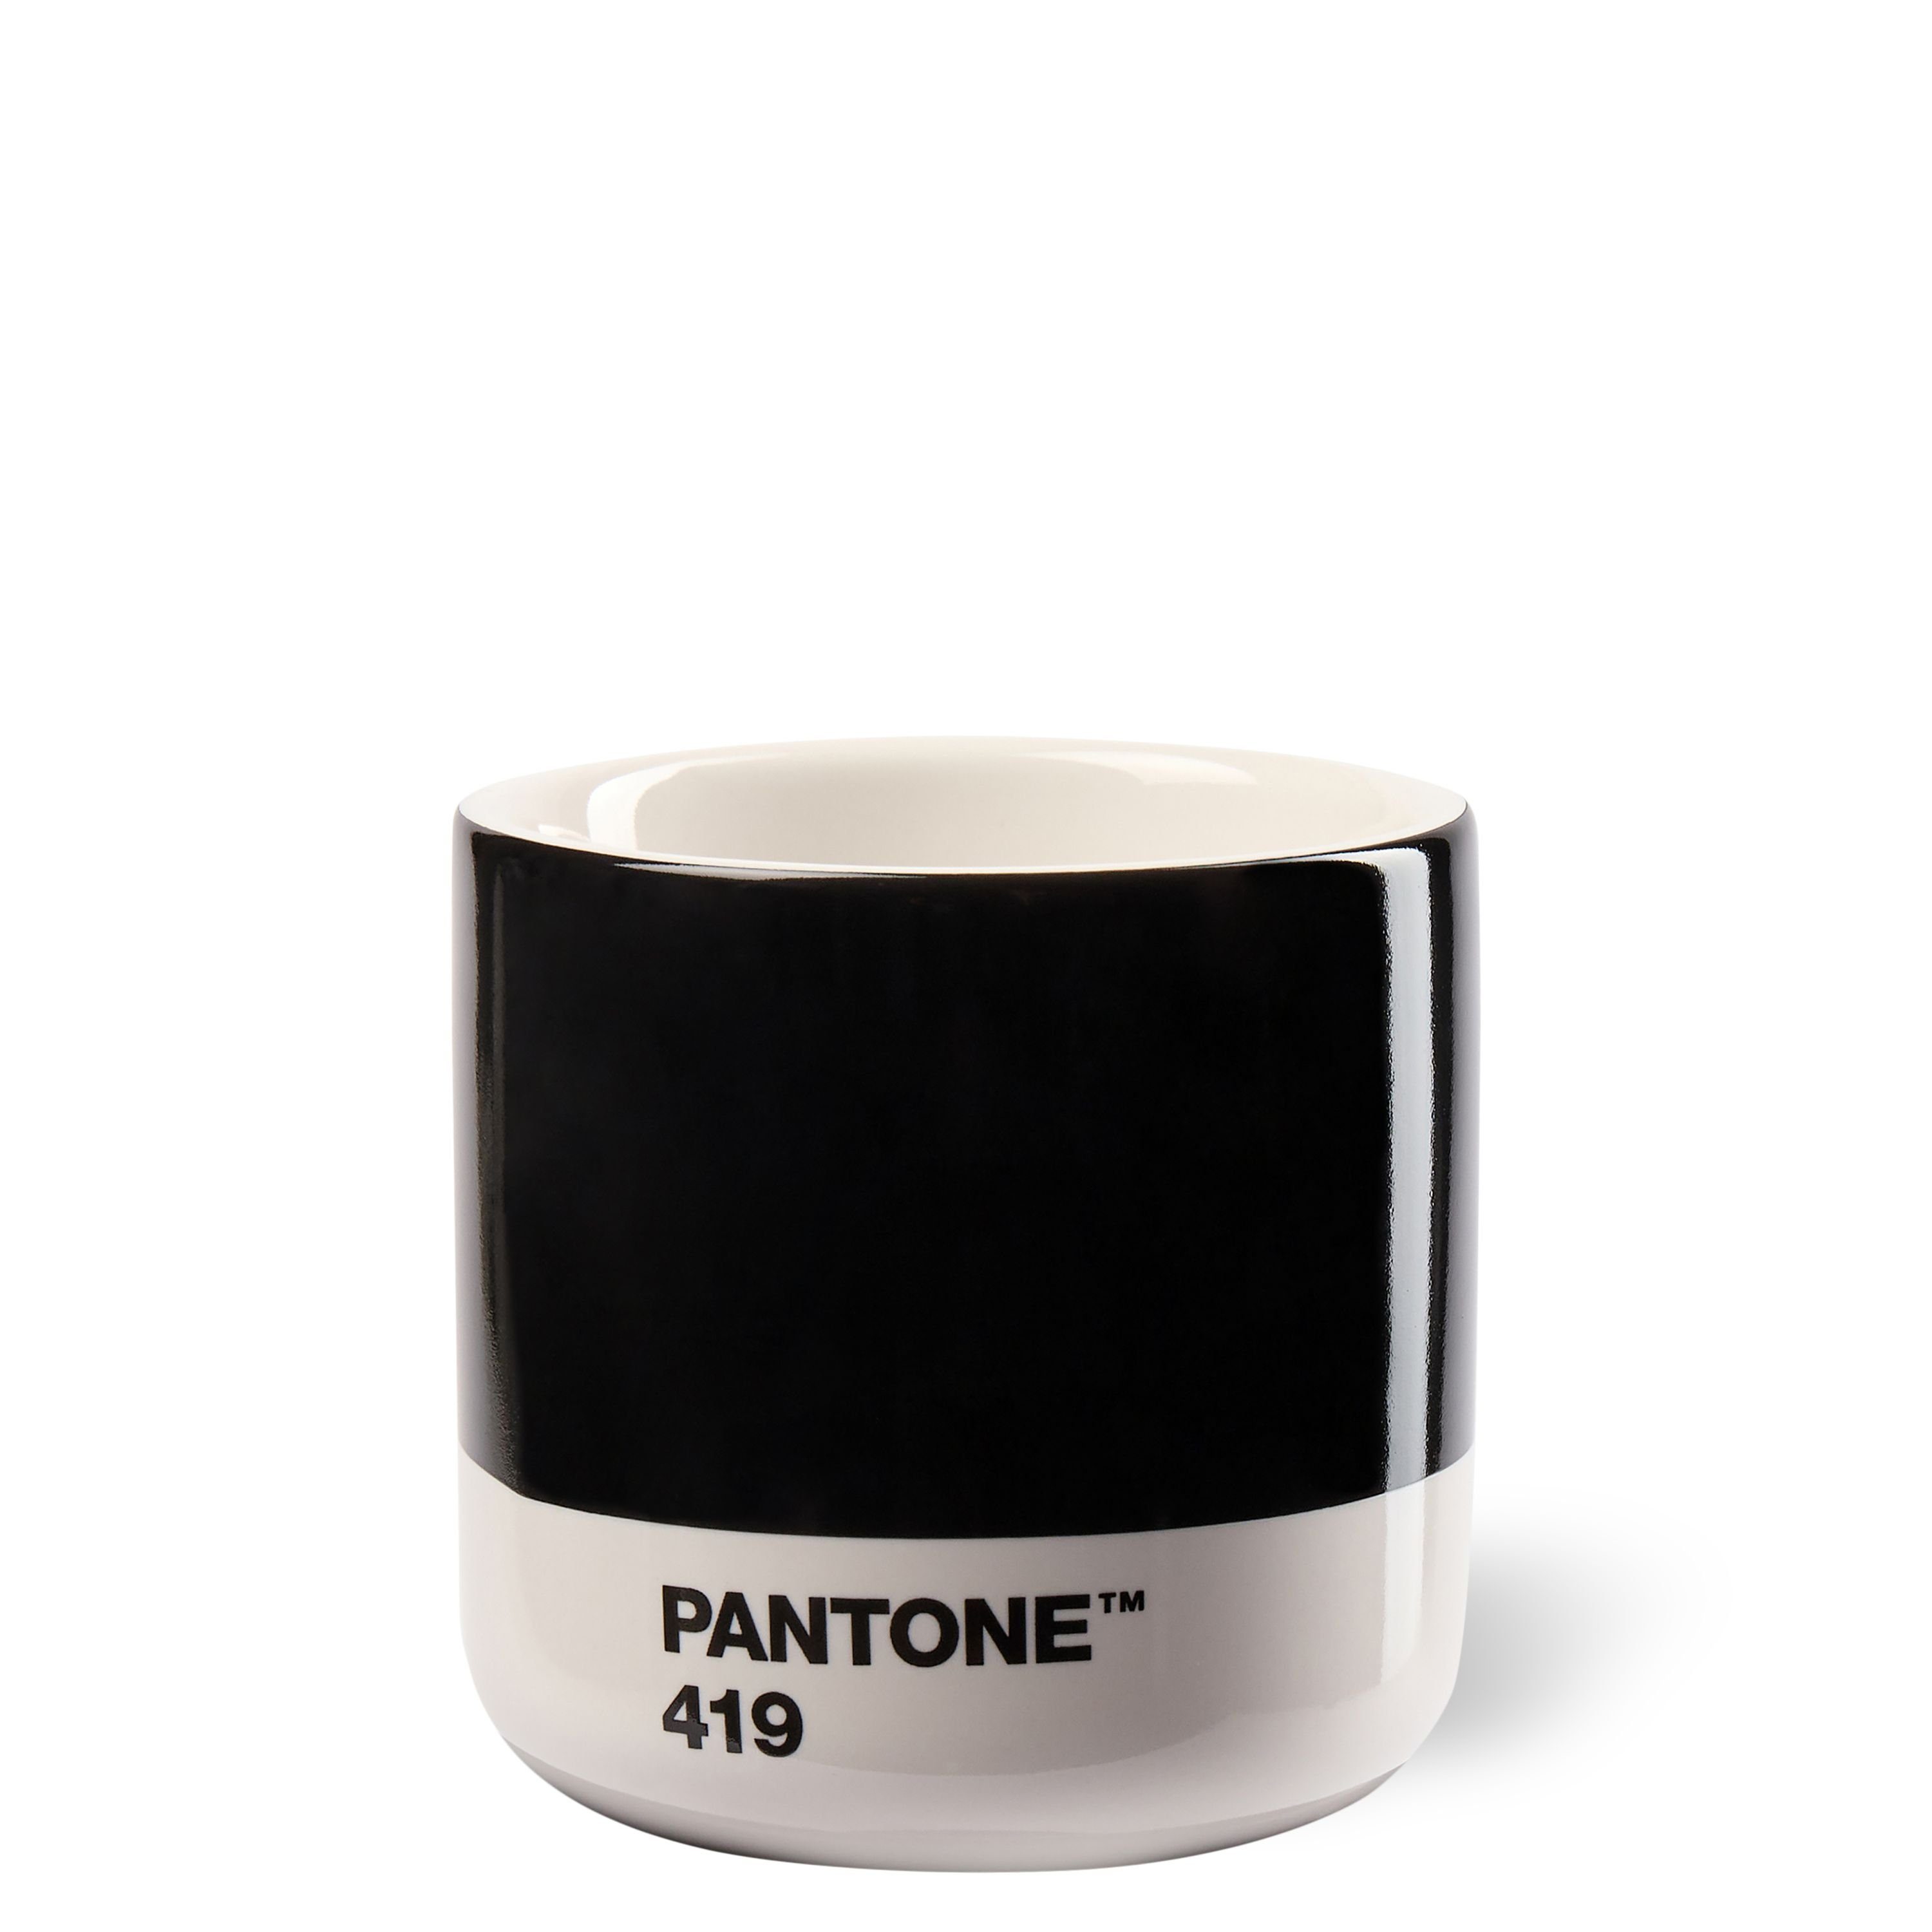 PANTONE Kaffeeservice, PANTONE Porzellan Macchiato Thermobecher Black 419 C